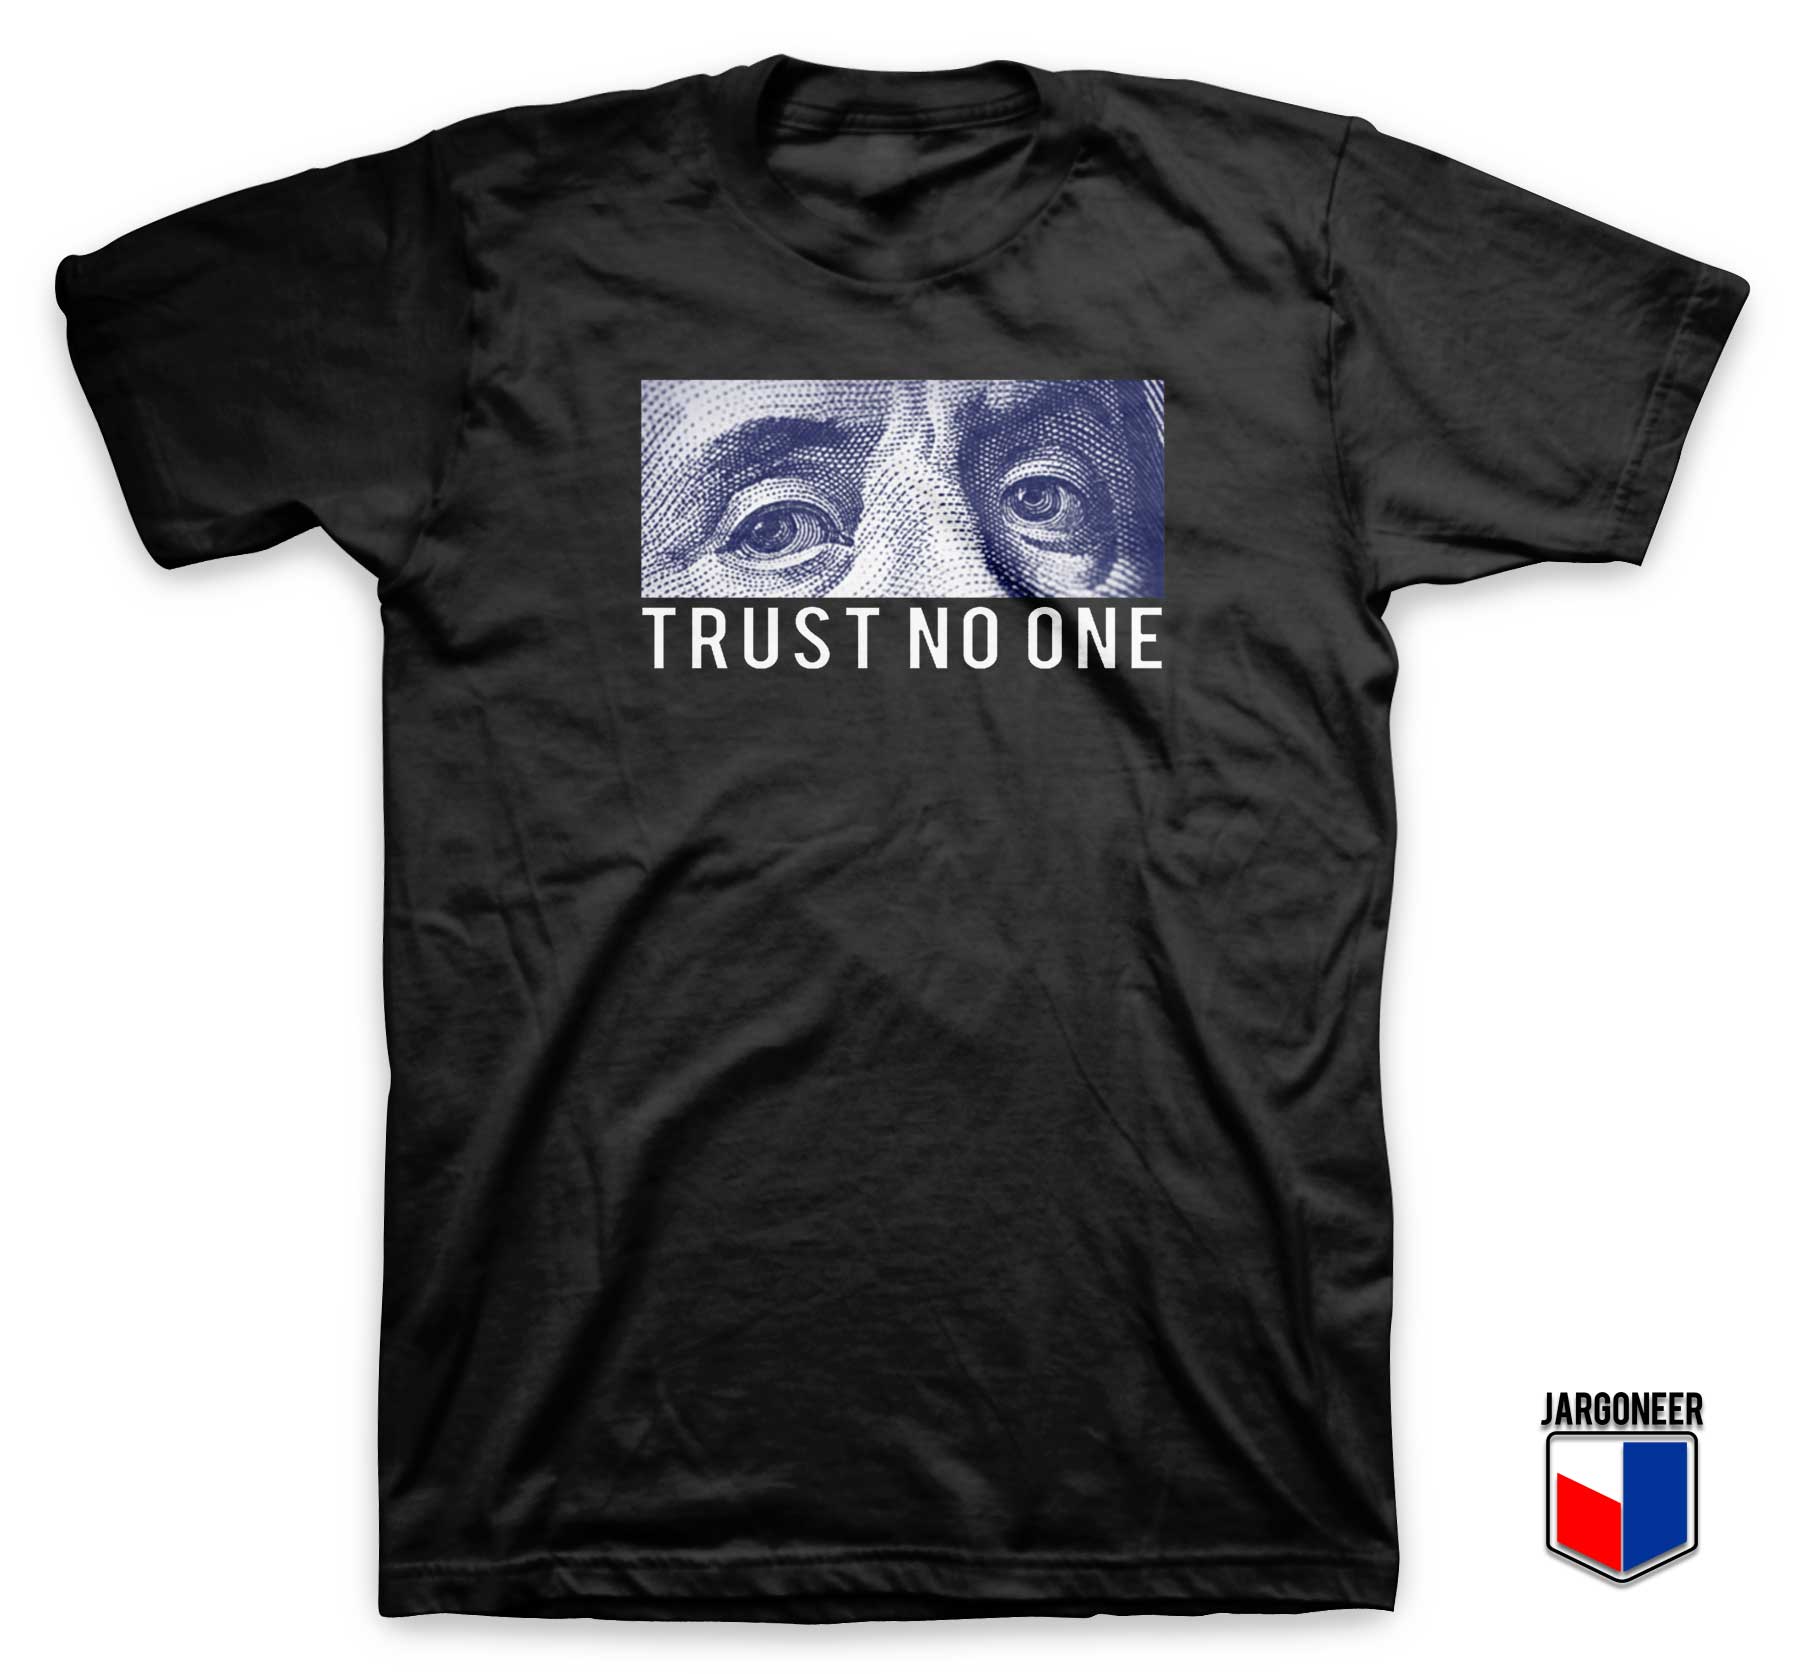 Trust No One T Shirt - Shop Unique Graphic Cool Shirt Designs